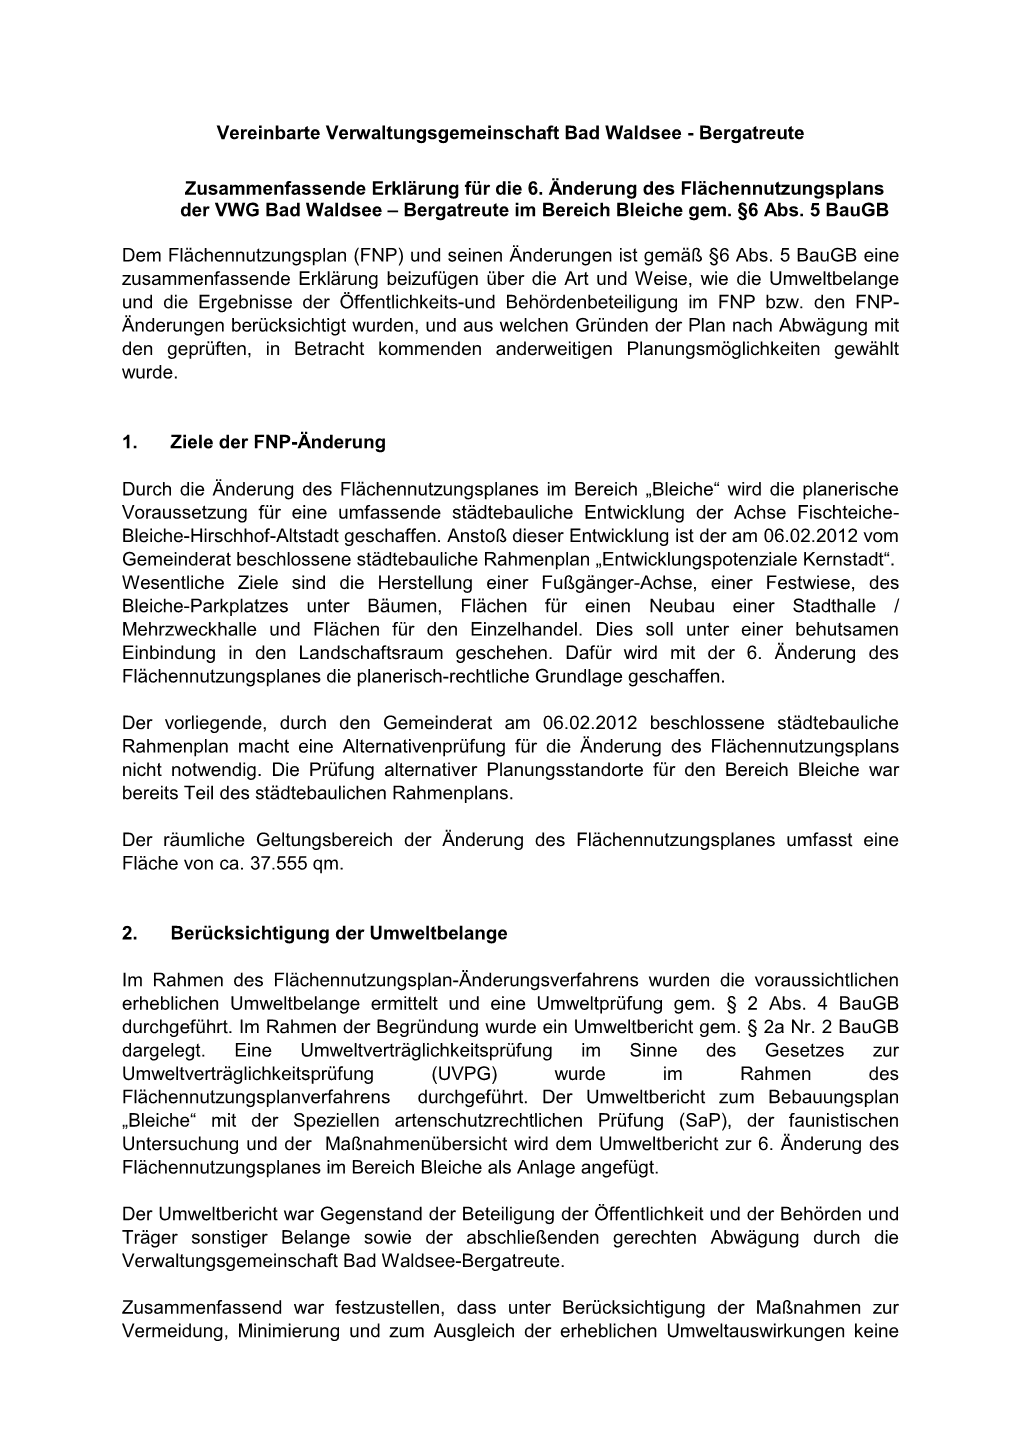 Vereinbarte Verwaltungsgemeinschaft Bad Waldsee - Bergatreute